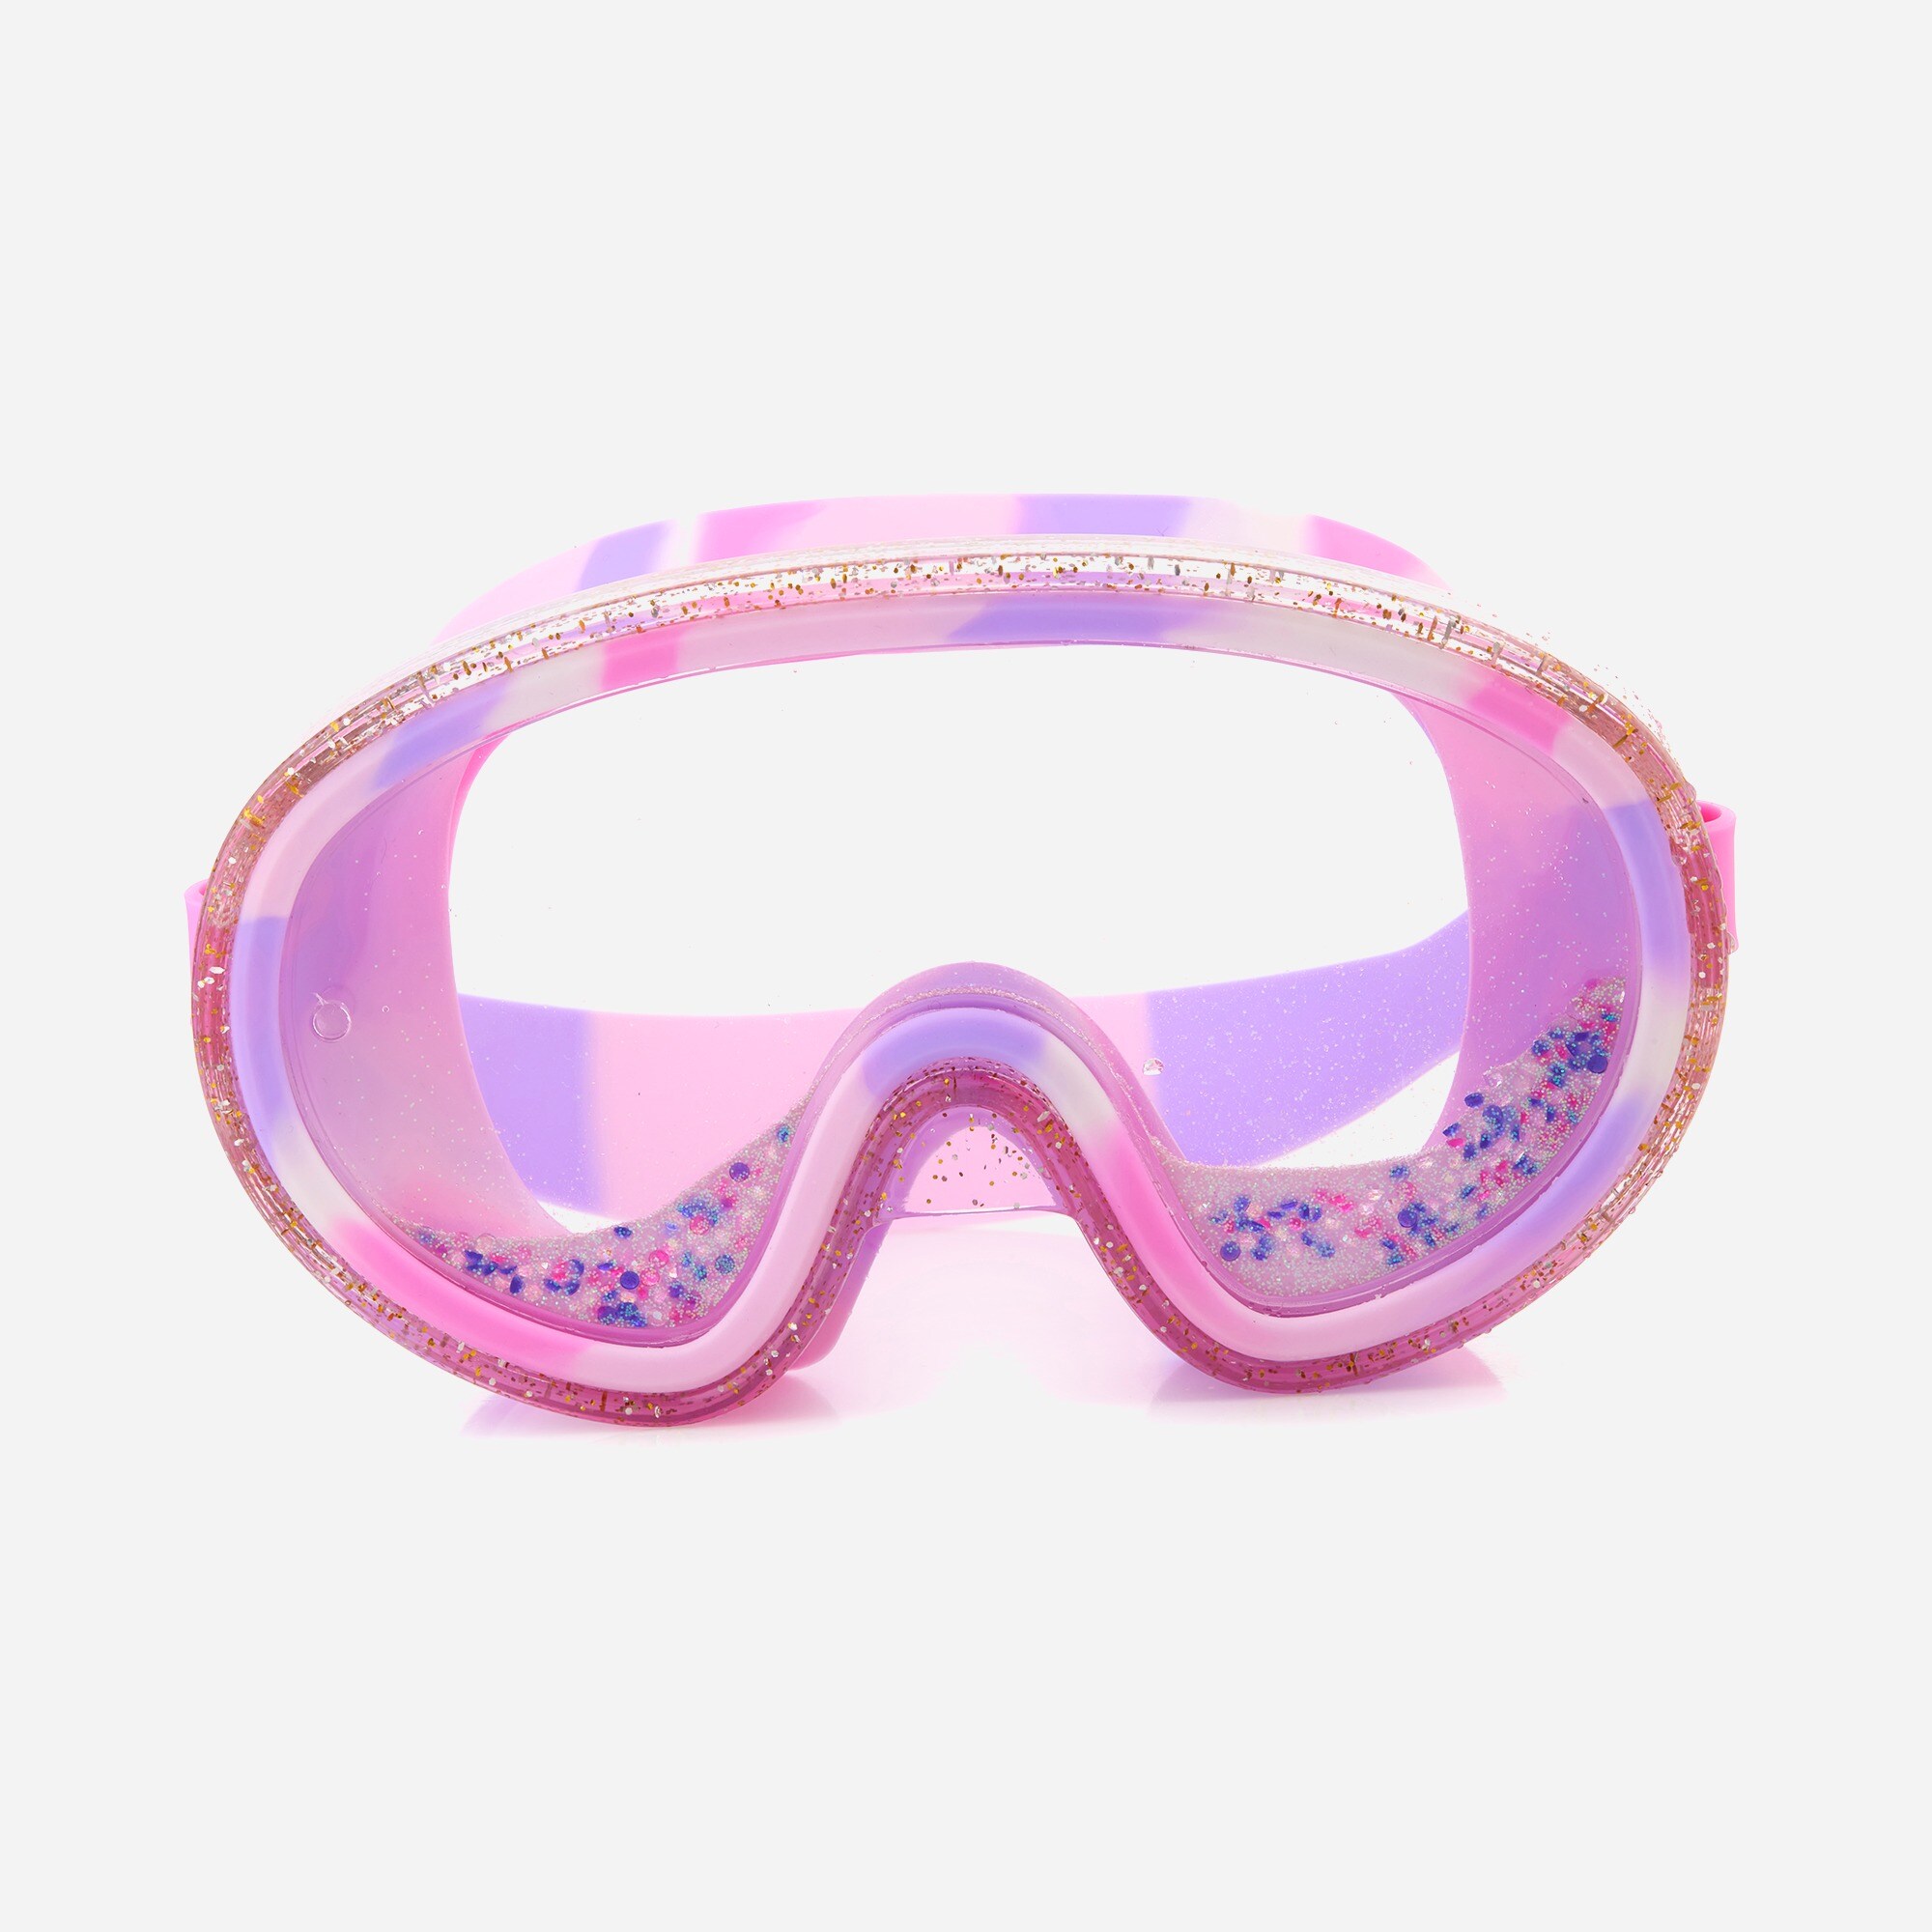  Bling2o® girls' breakdance disco swim mask